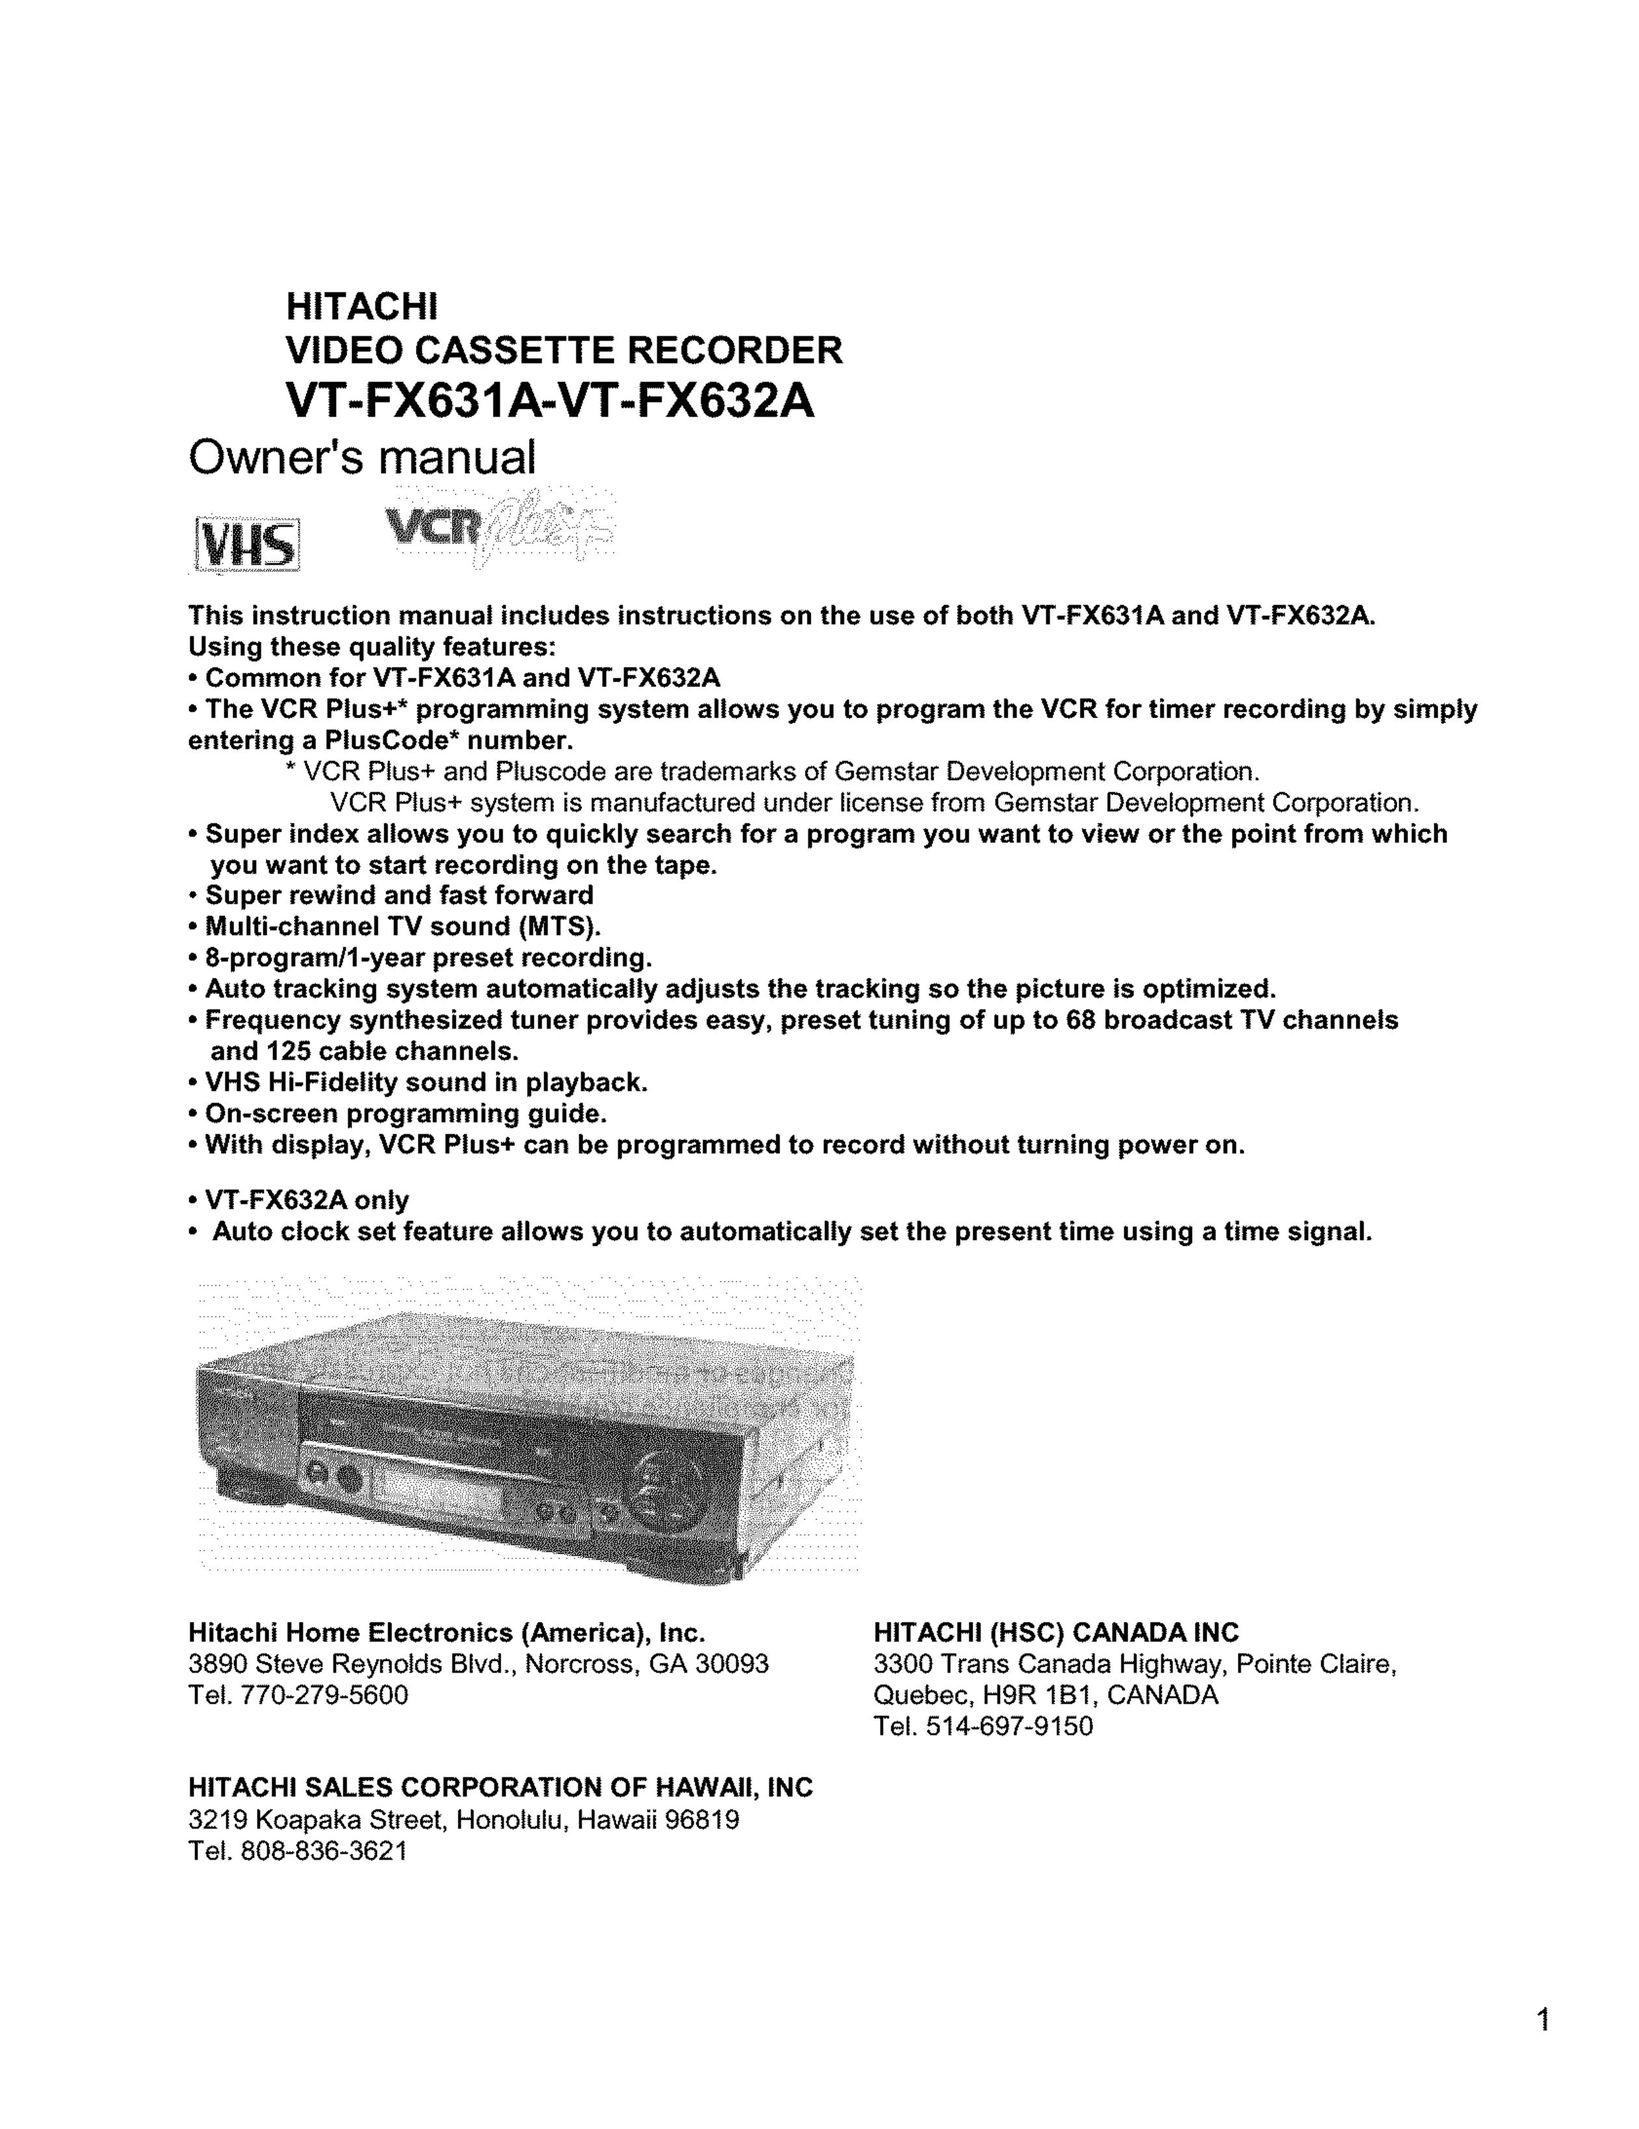 Hitachi VT-FX631A-VT-FX632A VCR User Manual